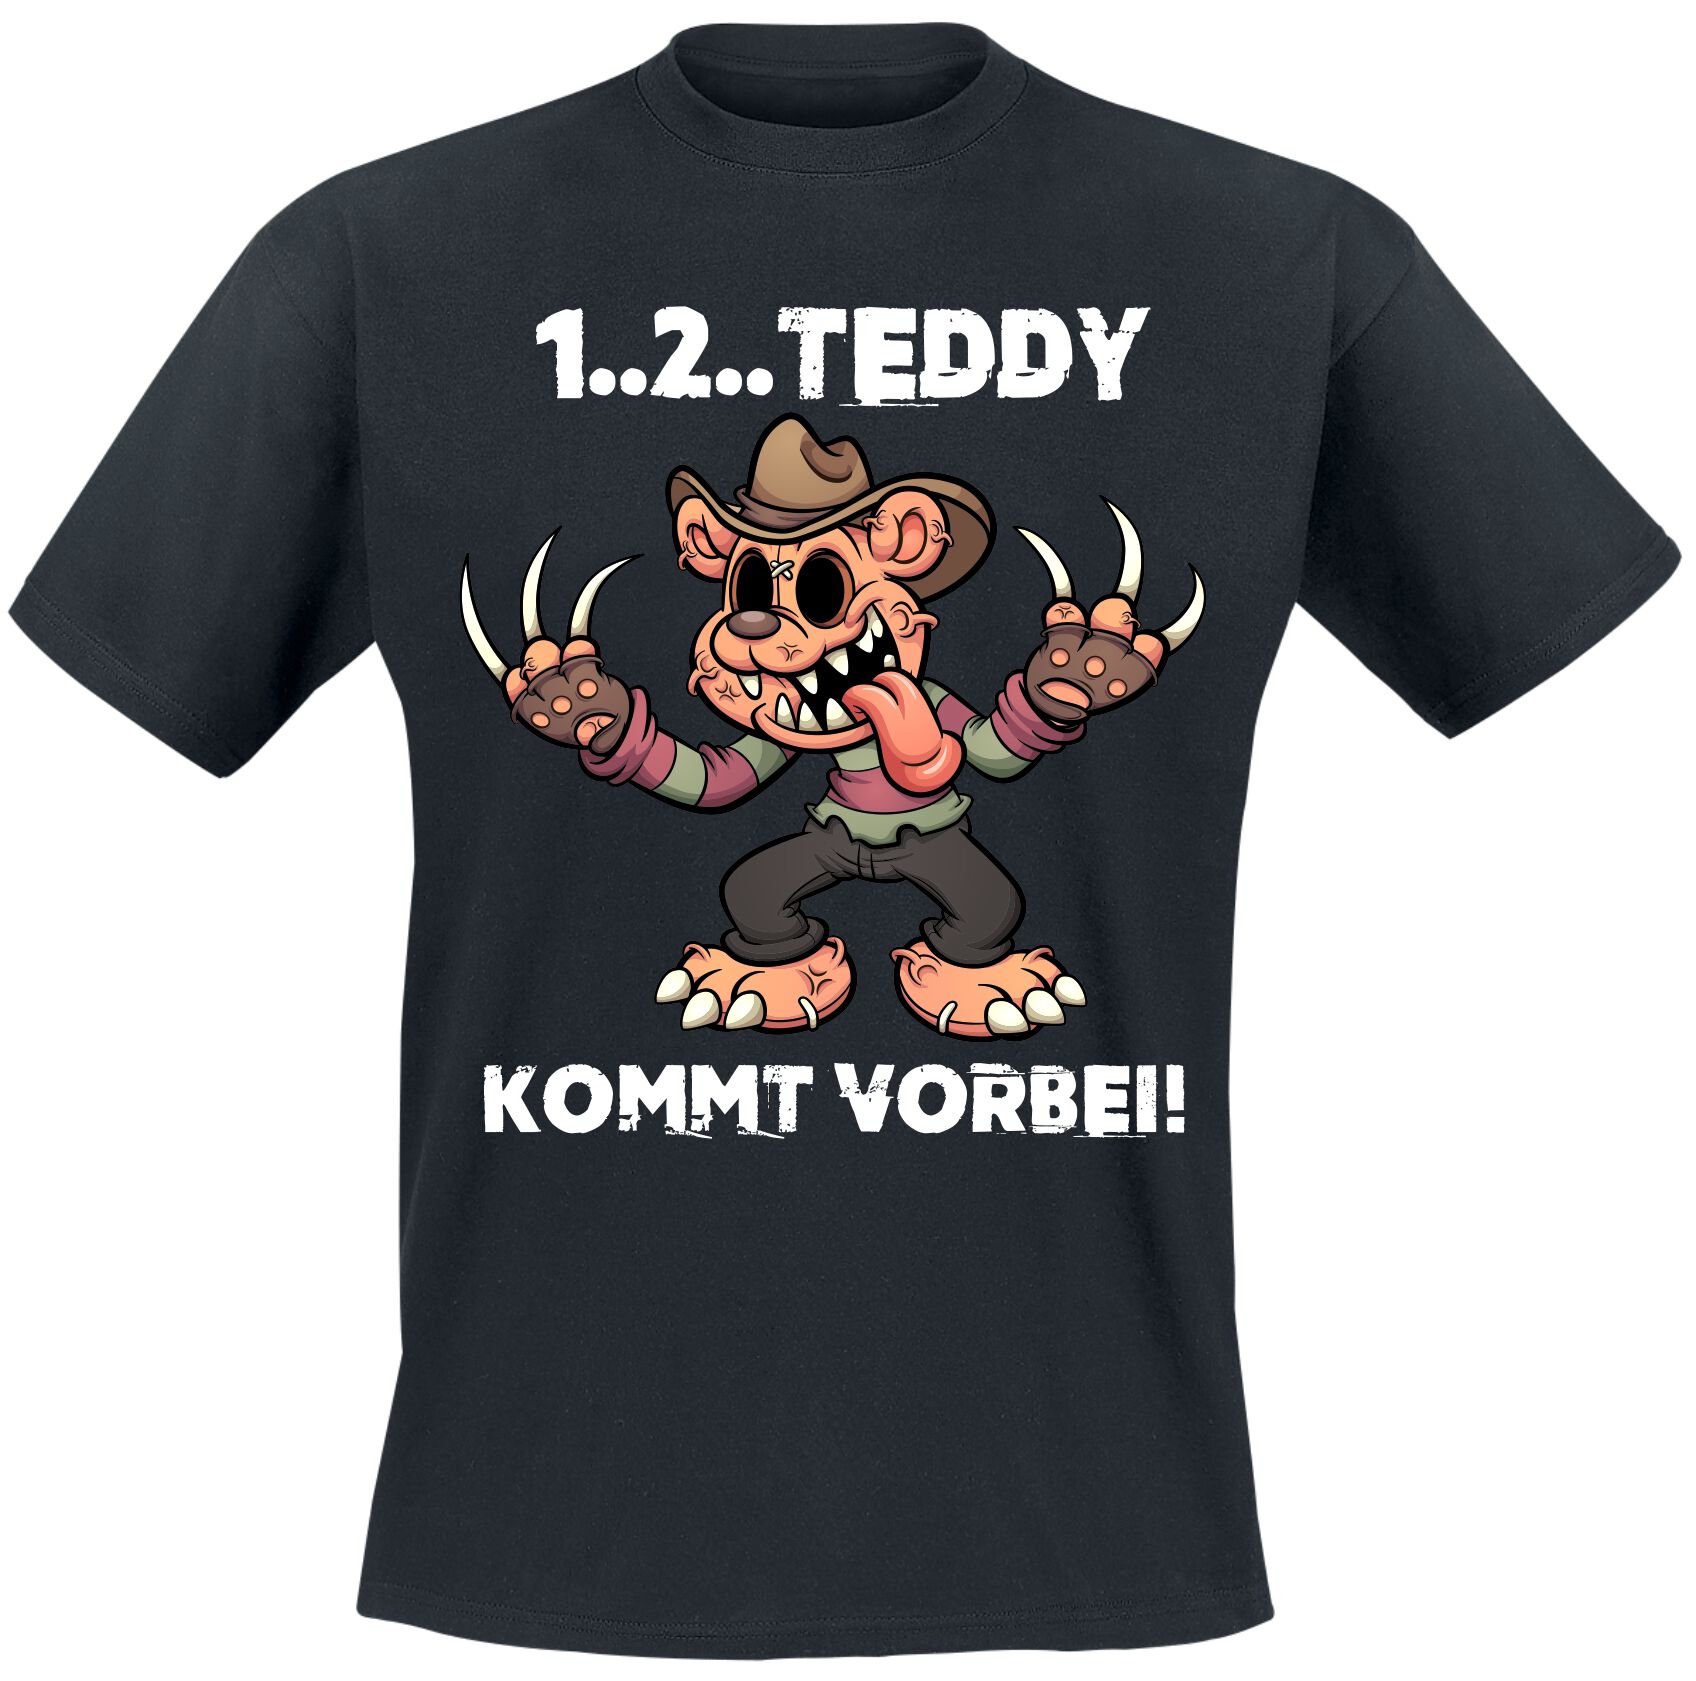 Sprüche T-Shirt - 1..2.. Teddy kommt vorbei - L bis XL - für Männer - Größe L - schwarz